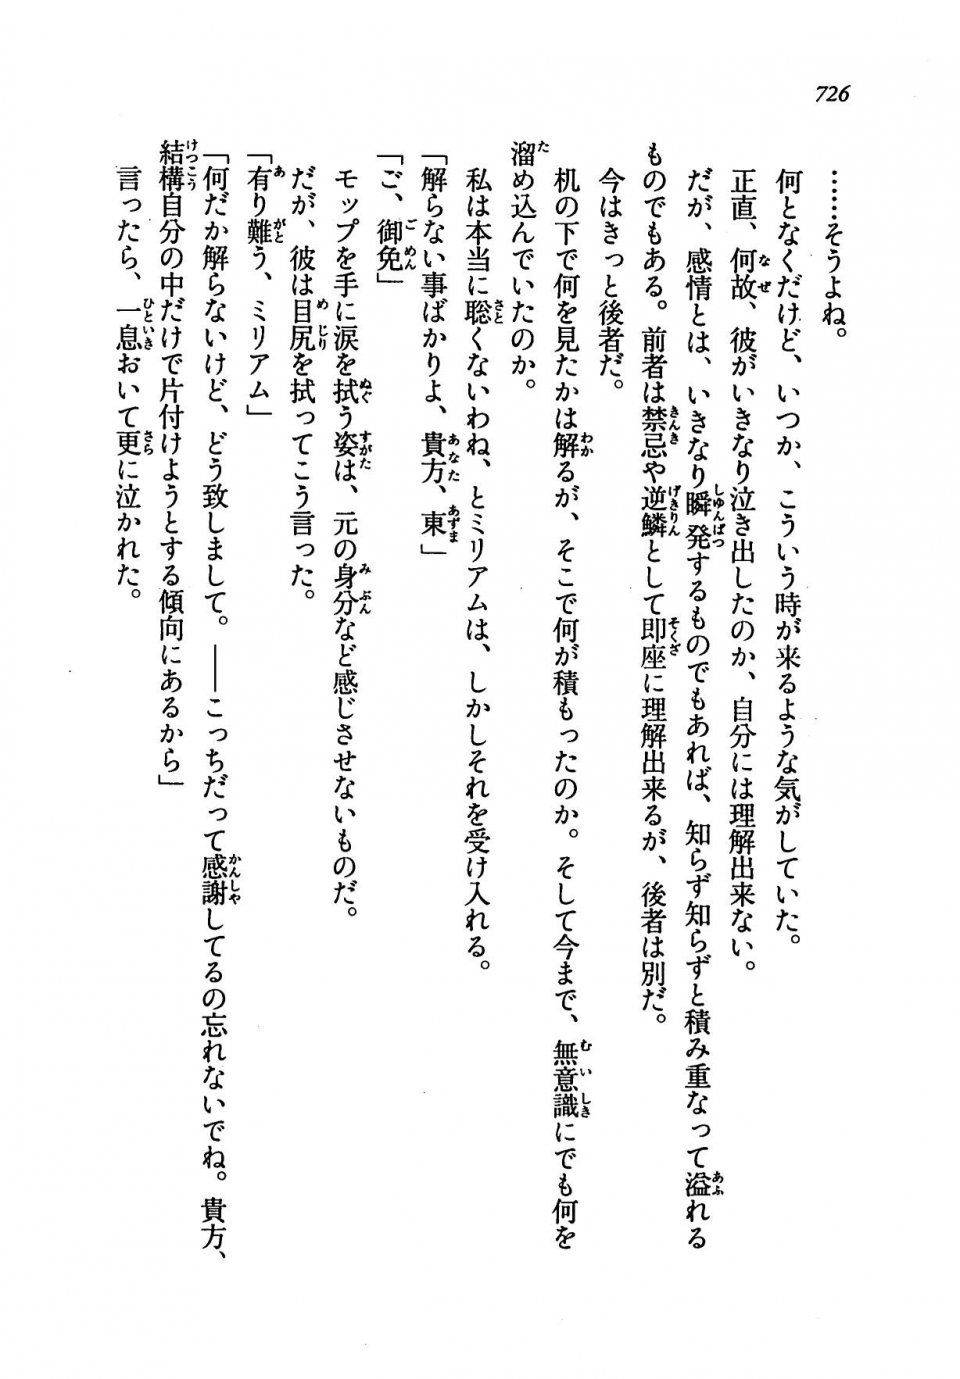 Kyoukai Senjou no Horizon LN Vol 19(8A) - Photo #726